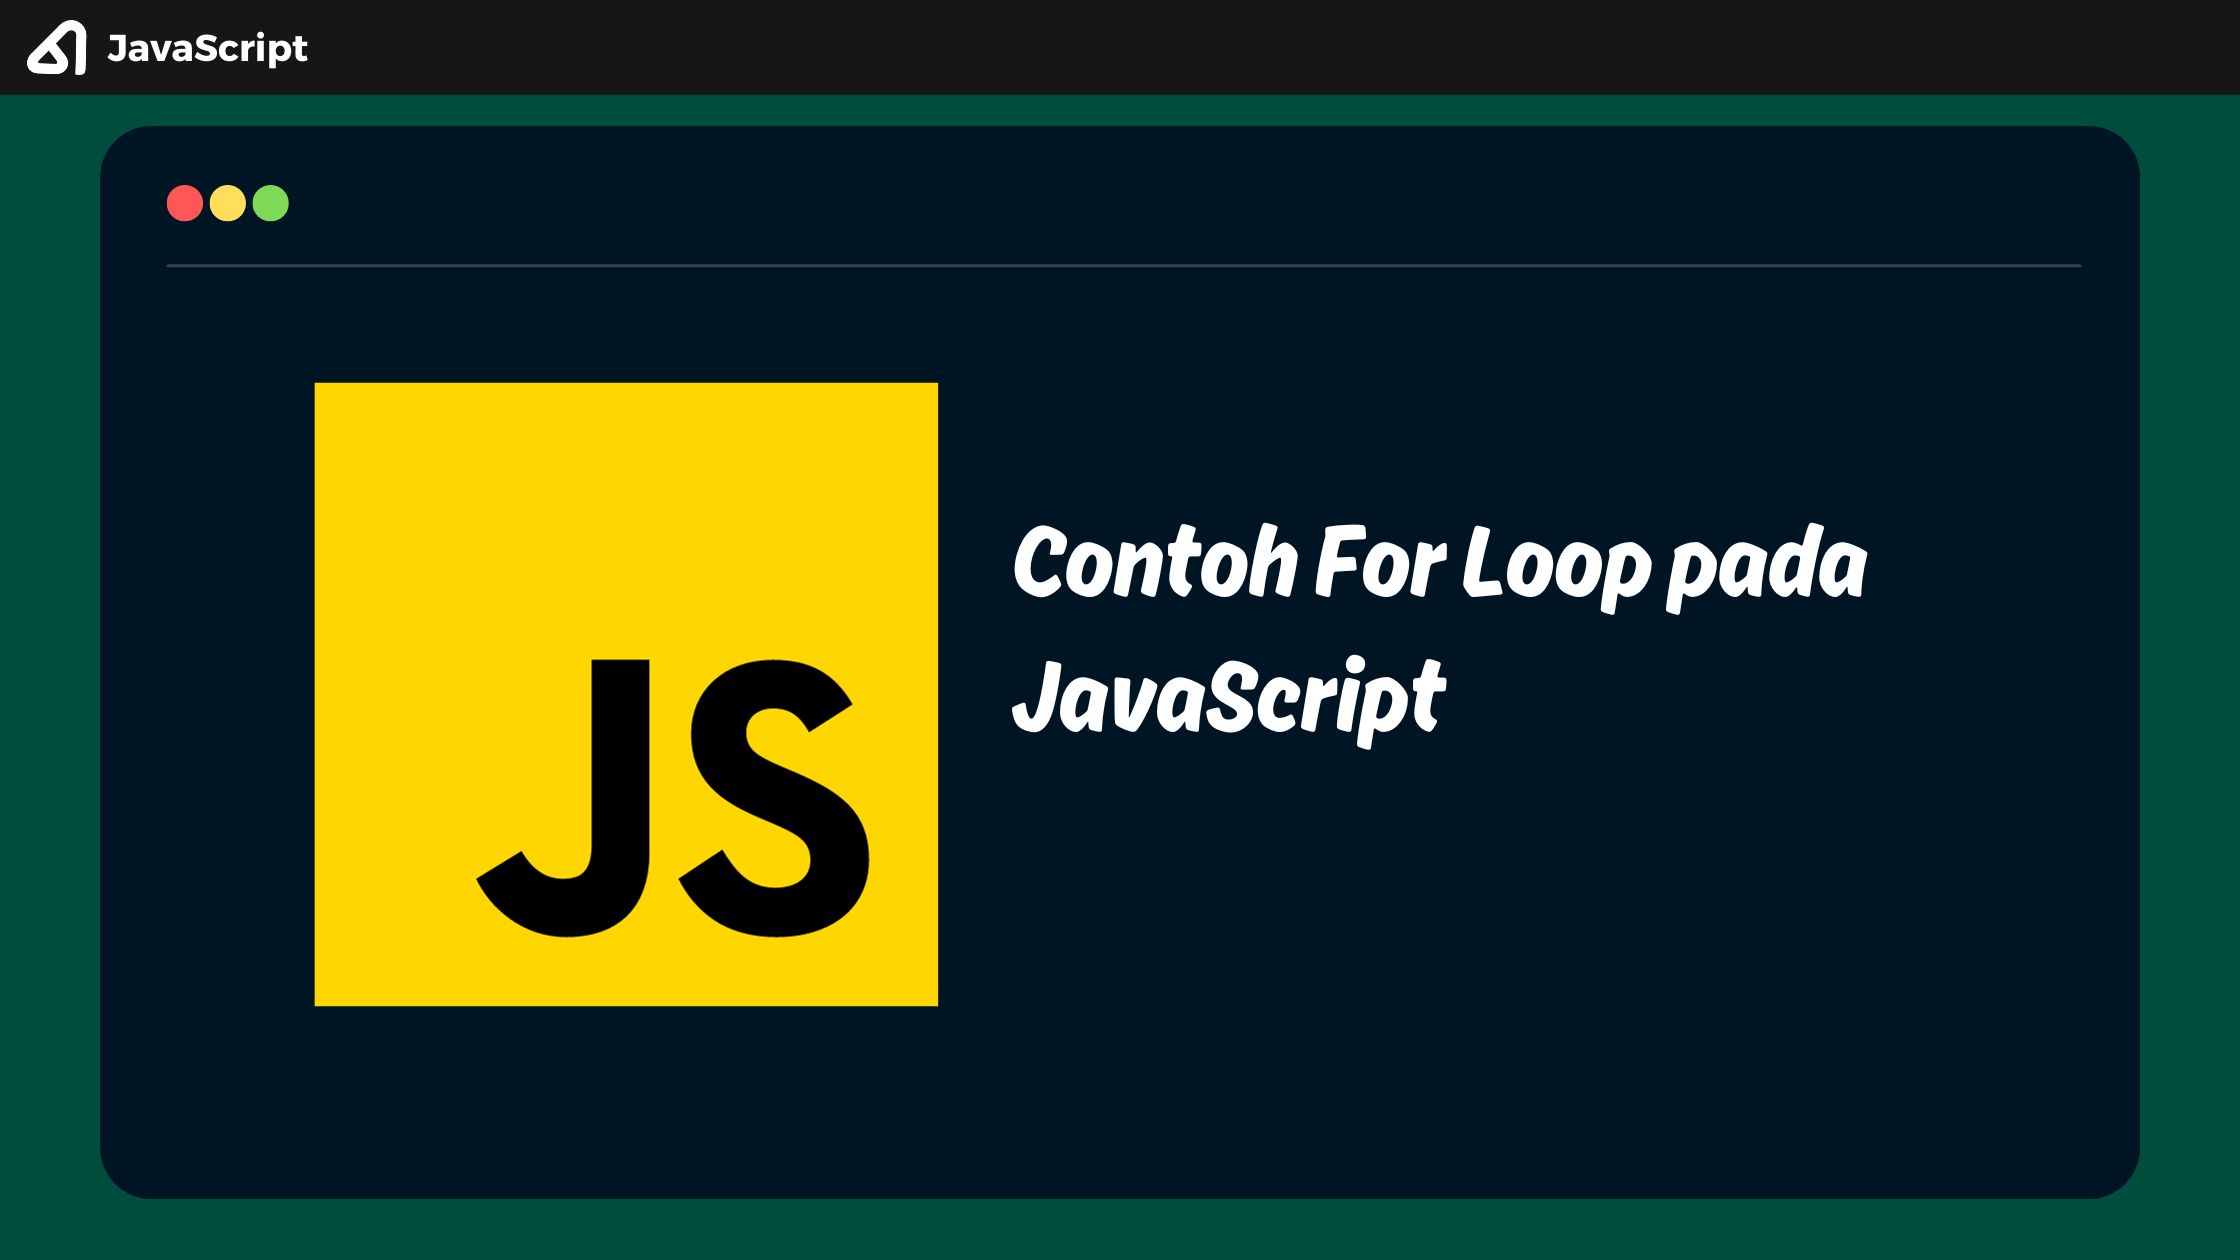 Contoh For Loop pada JavaScript